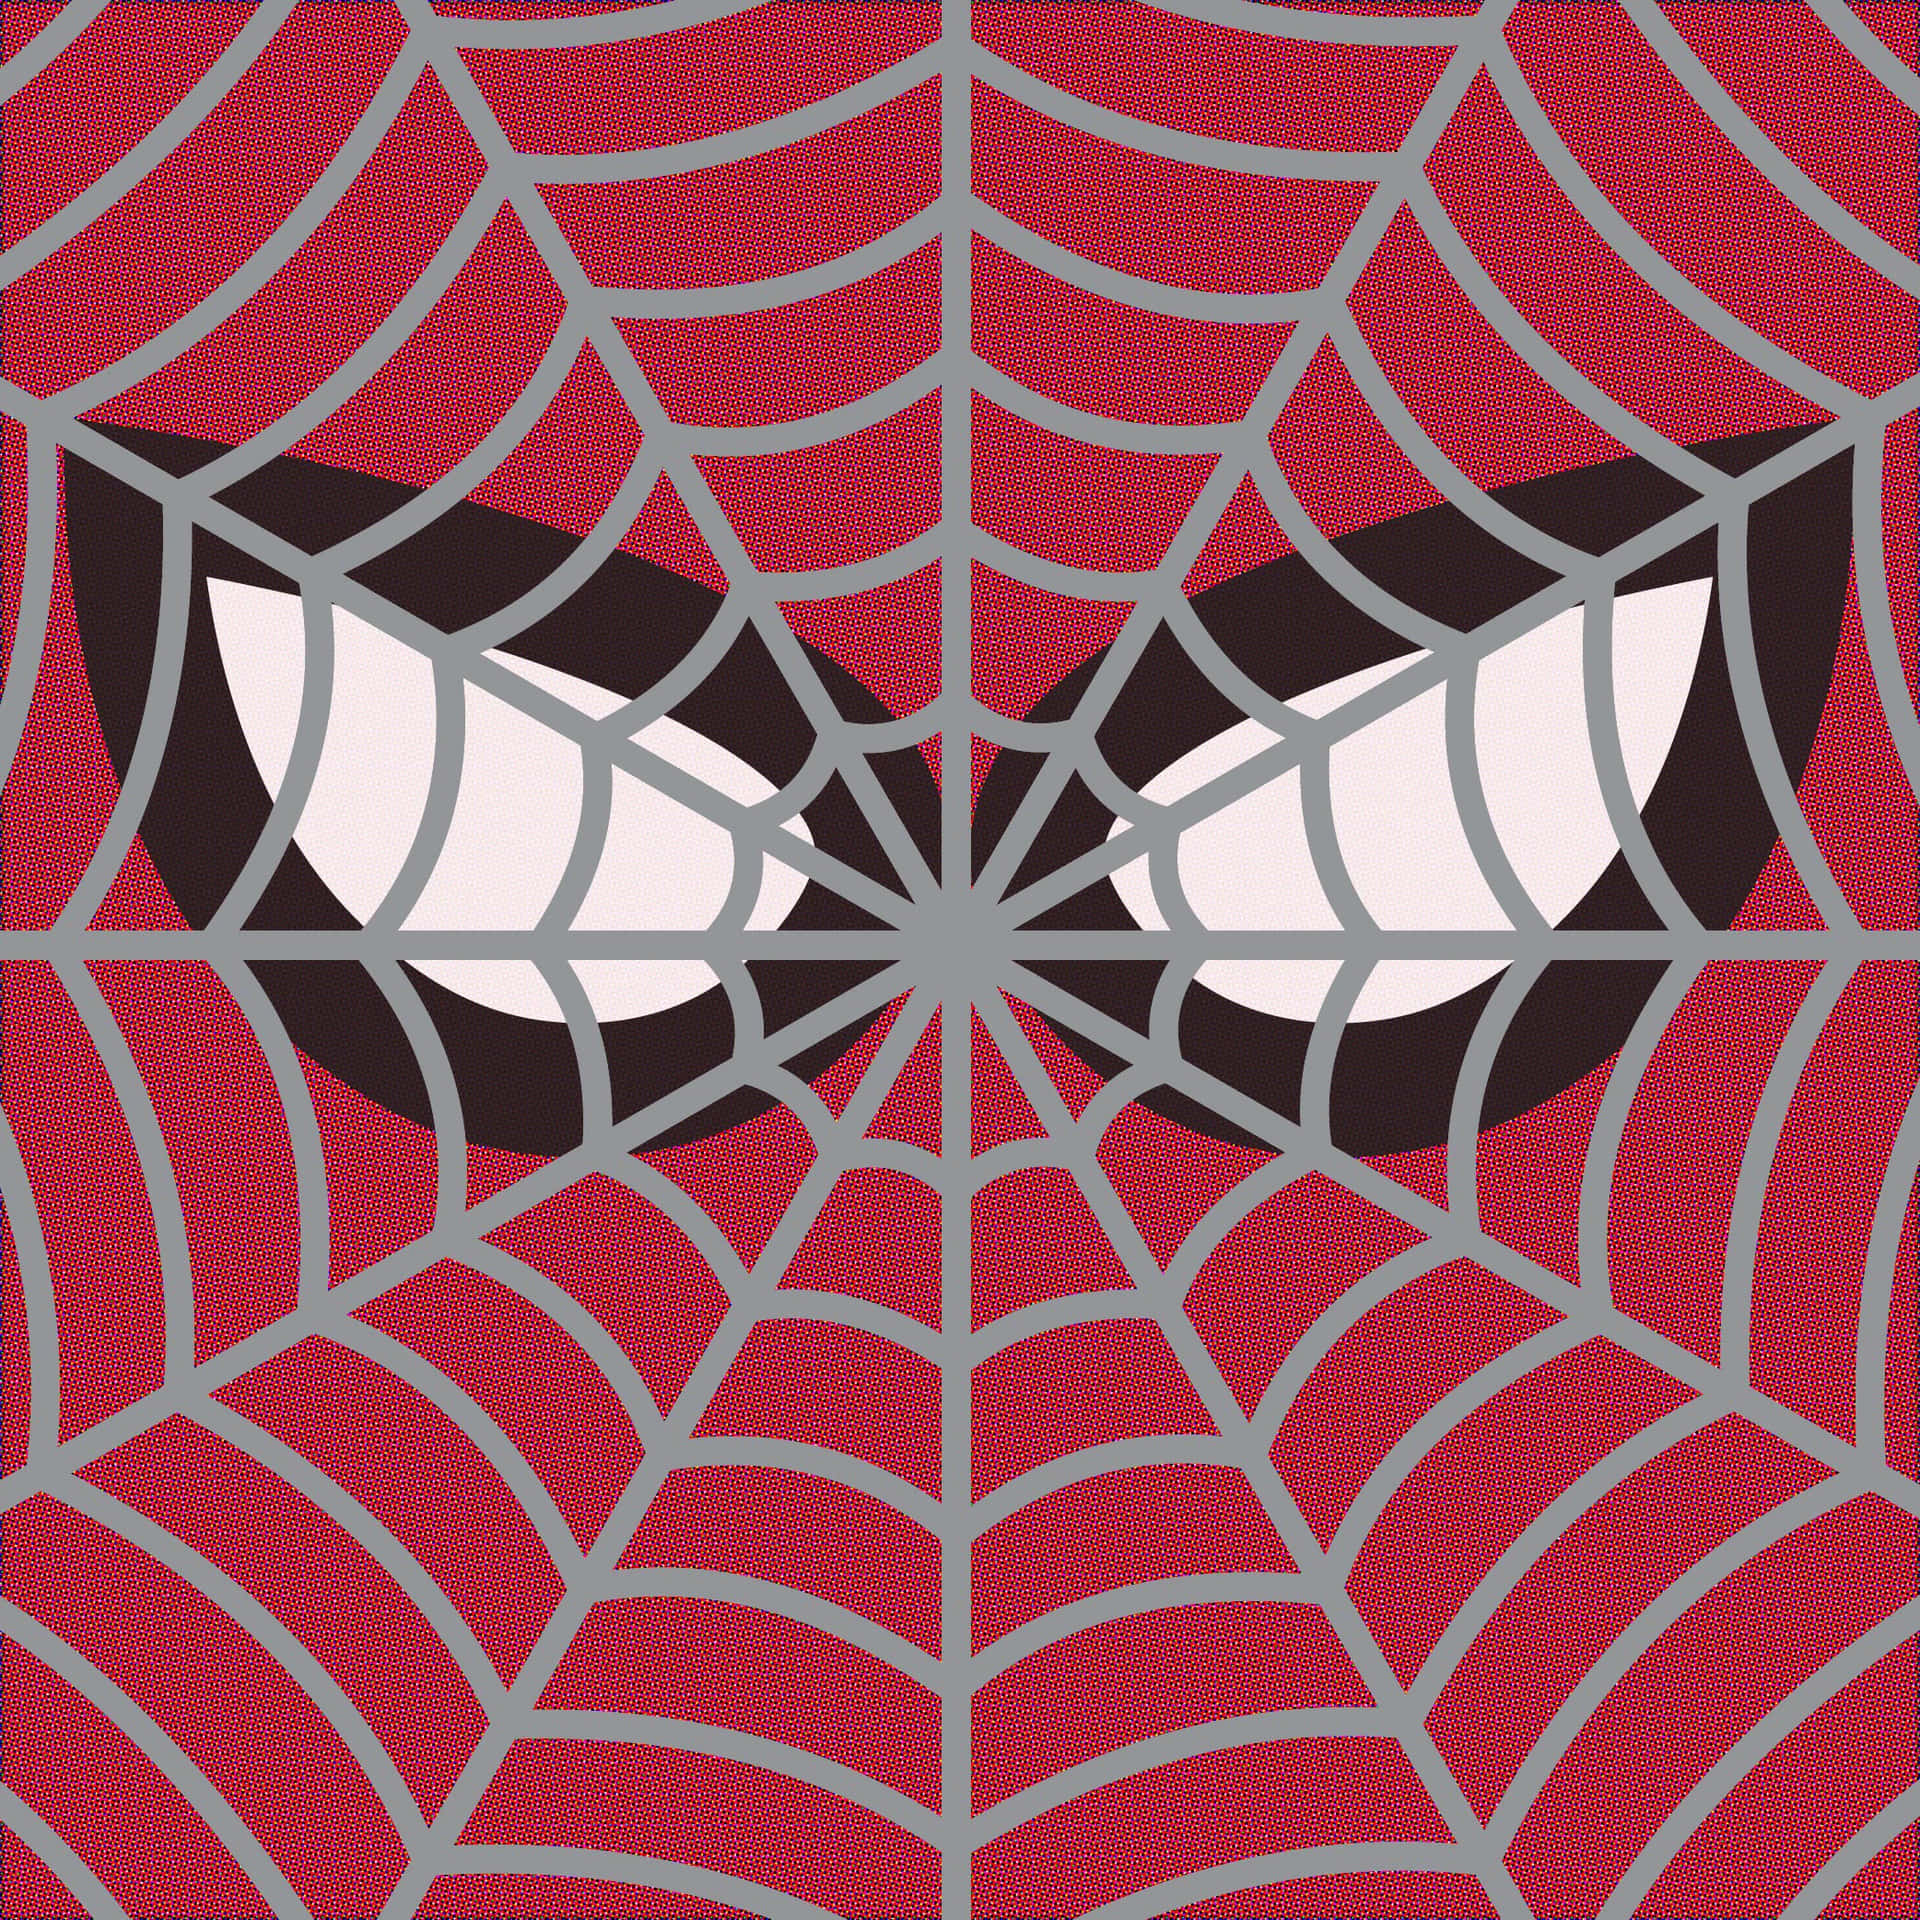 Imagens Do Homem-aranha